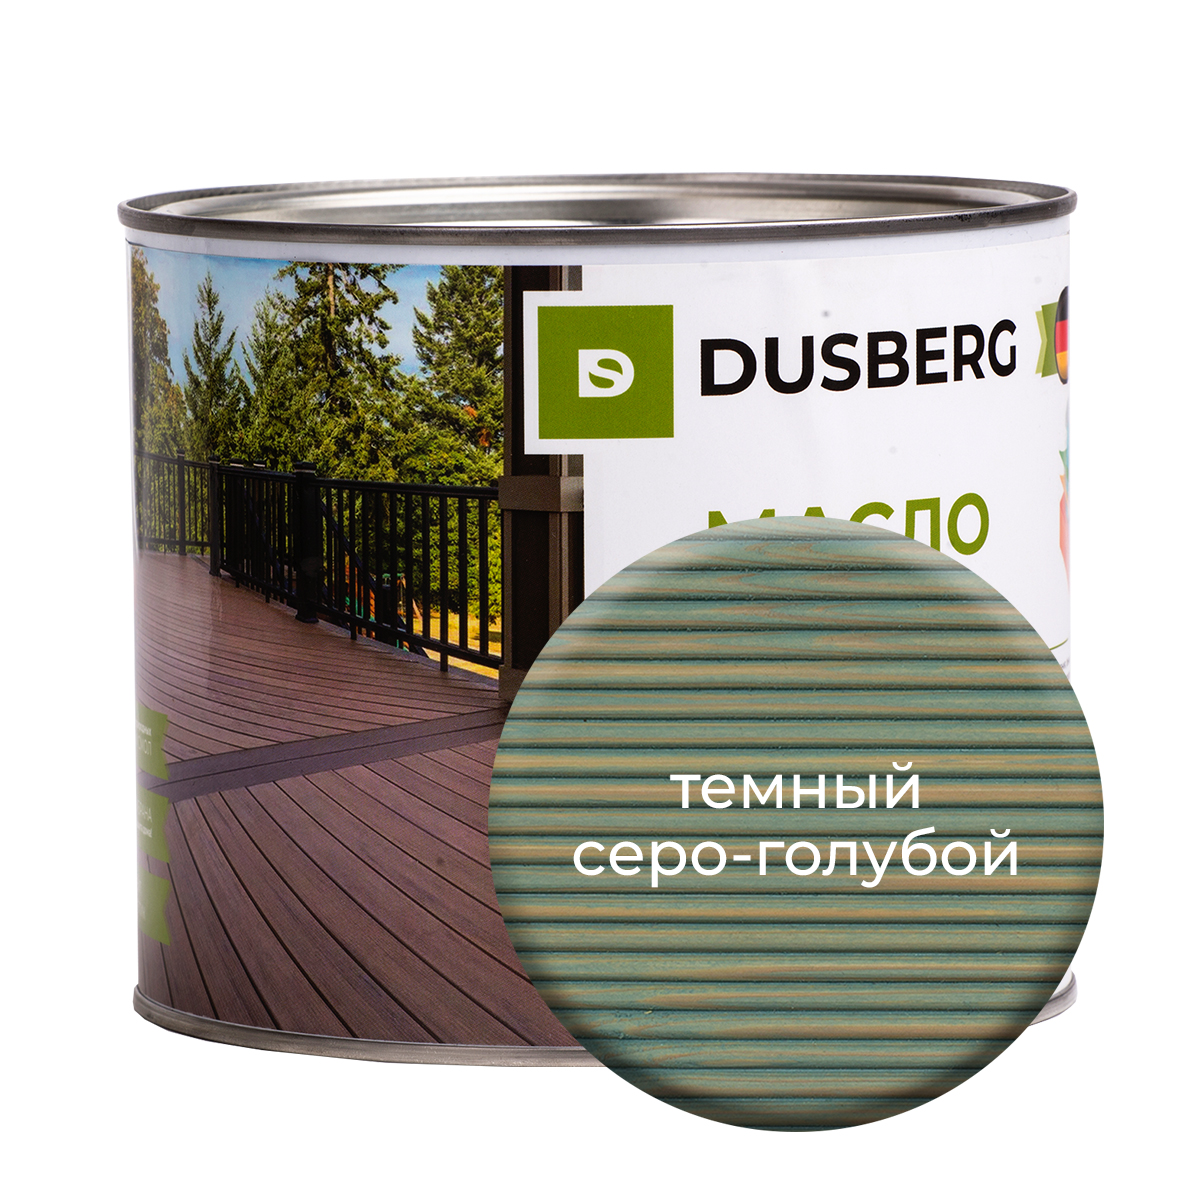 Масло Dusberg для террас 2л Темный серо-голубой масло dusberg для террас 2л моренный дуб